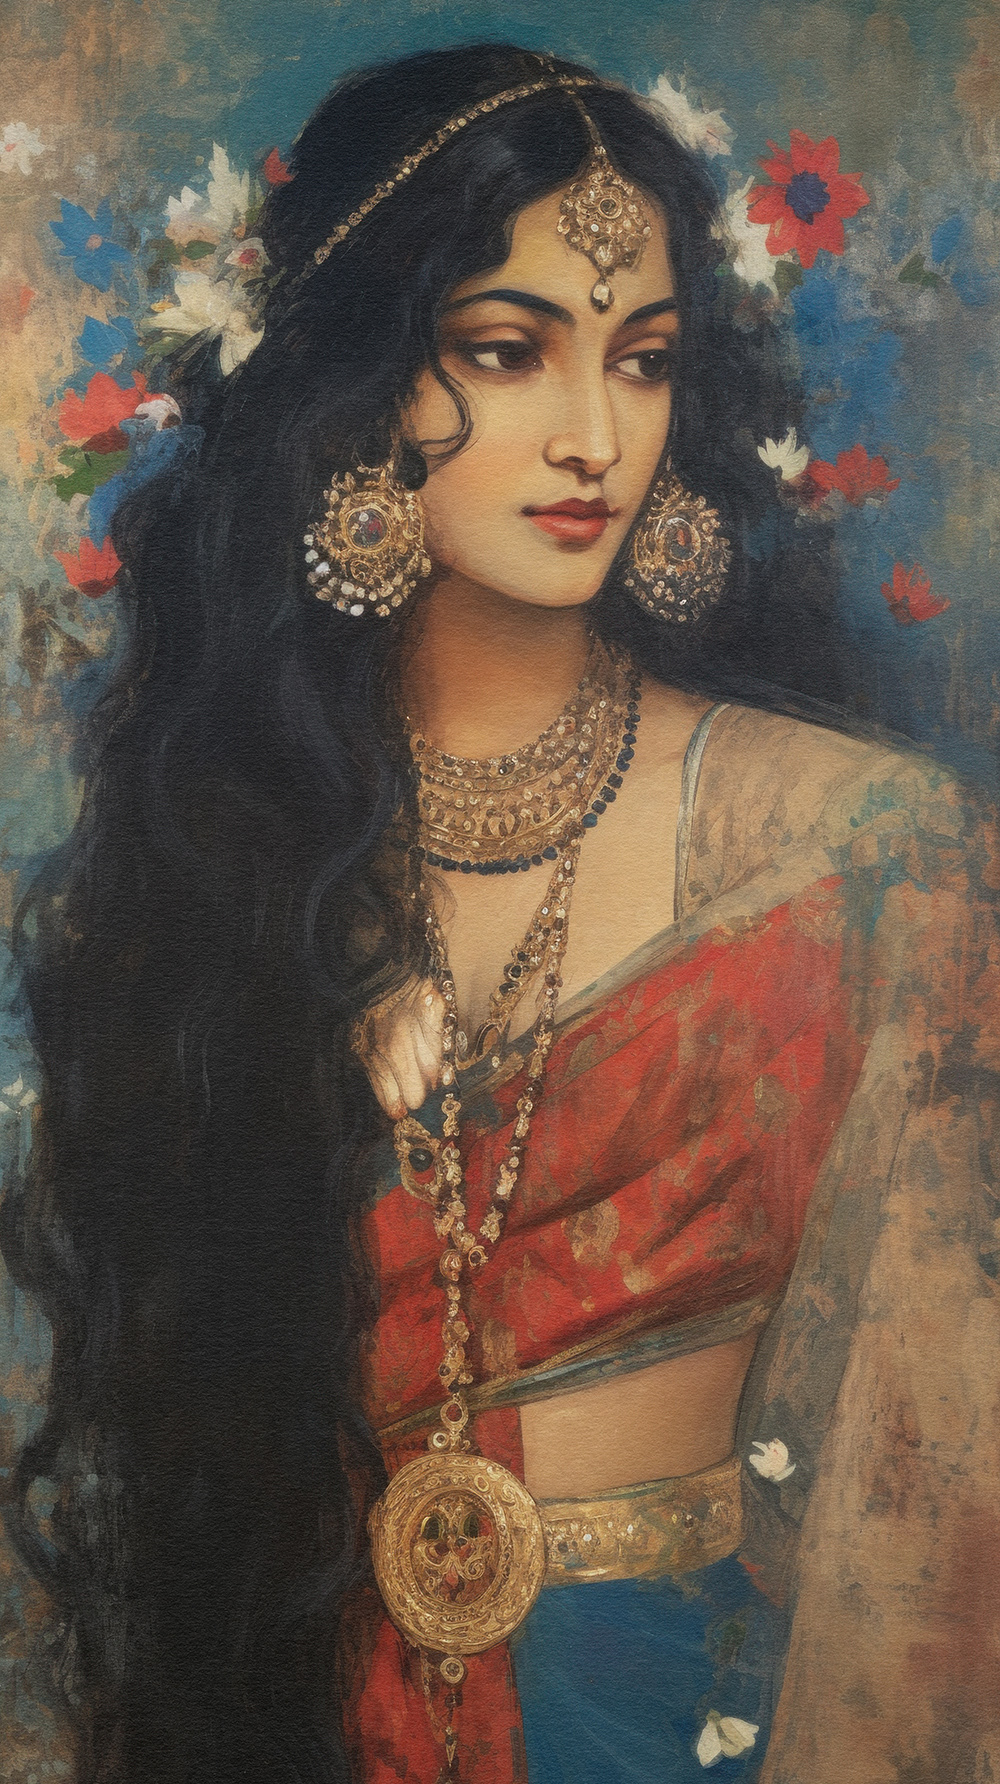 beauty Beautiful beautiful woman beautiful girl Indian woman India portrait beautiful portrait beautiful woman portrait indian woman art